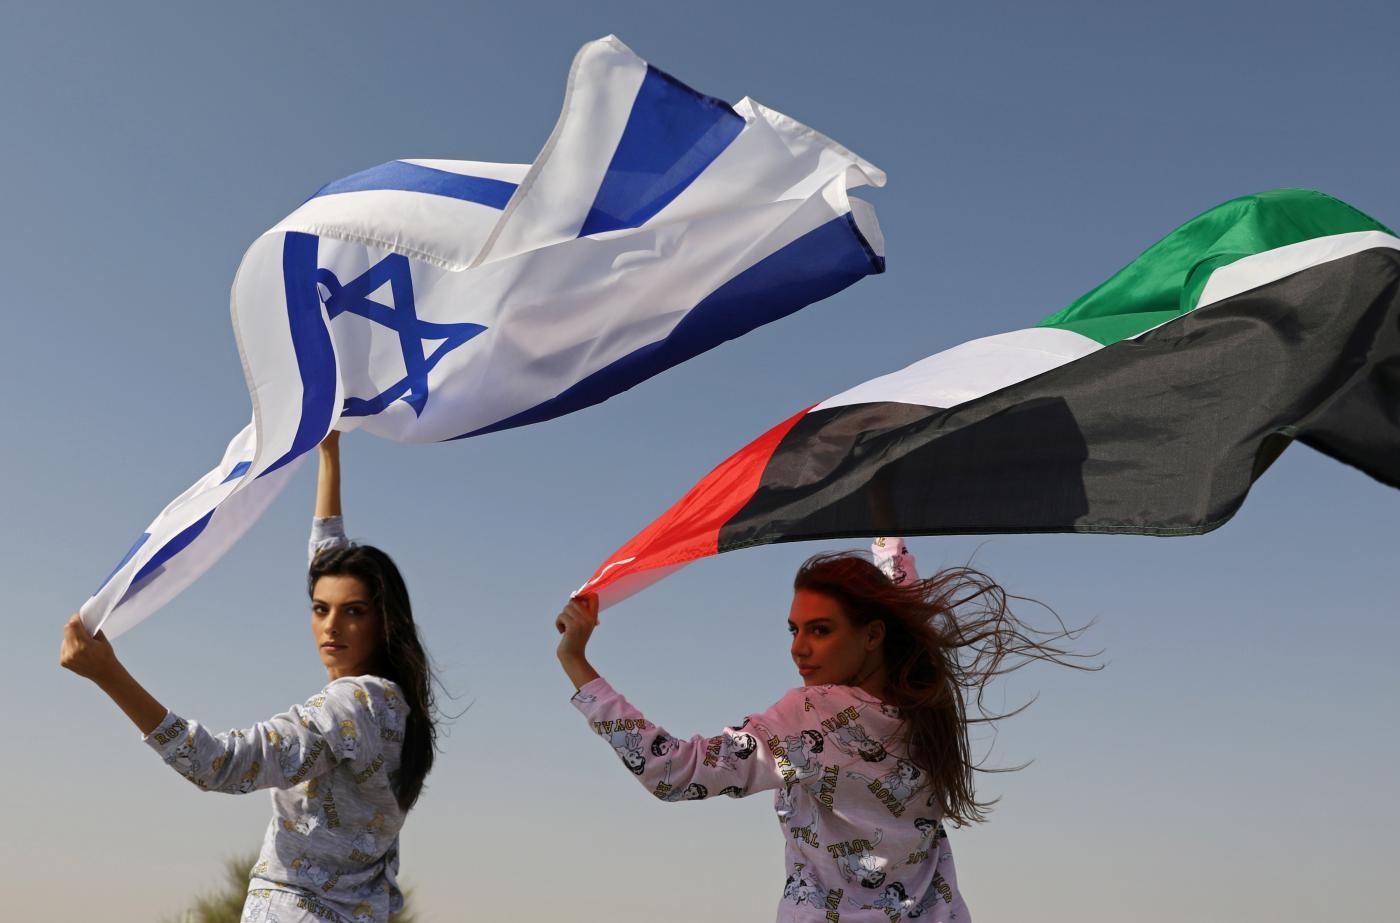 Des mannequins, l’une Israélienne et l’autre vivant à Dubaï, brandissent des drapeaux israélien et émirati pendant une séance photo dans le désert (Reuters)